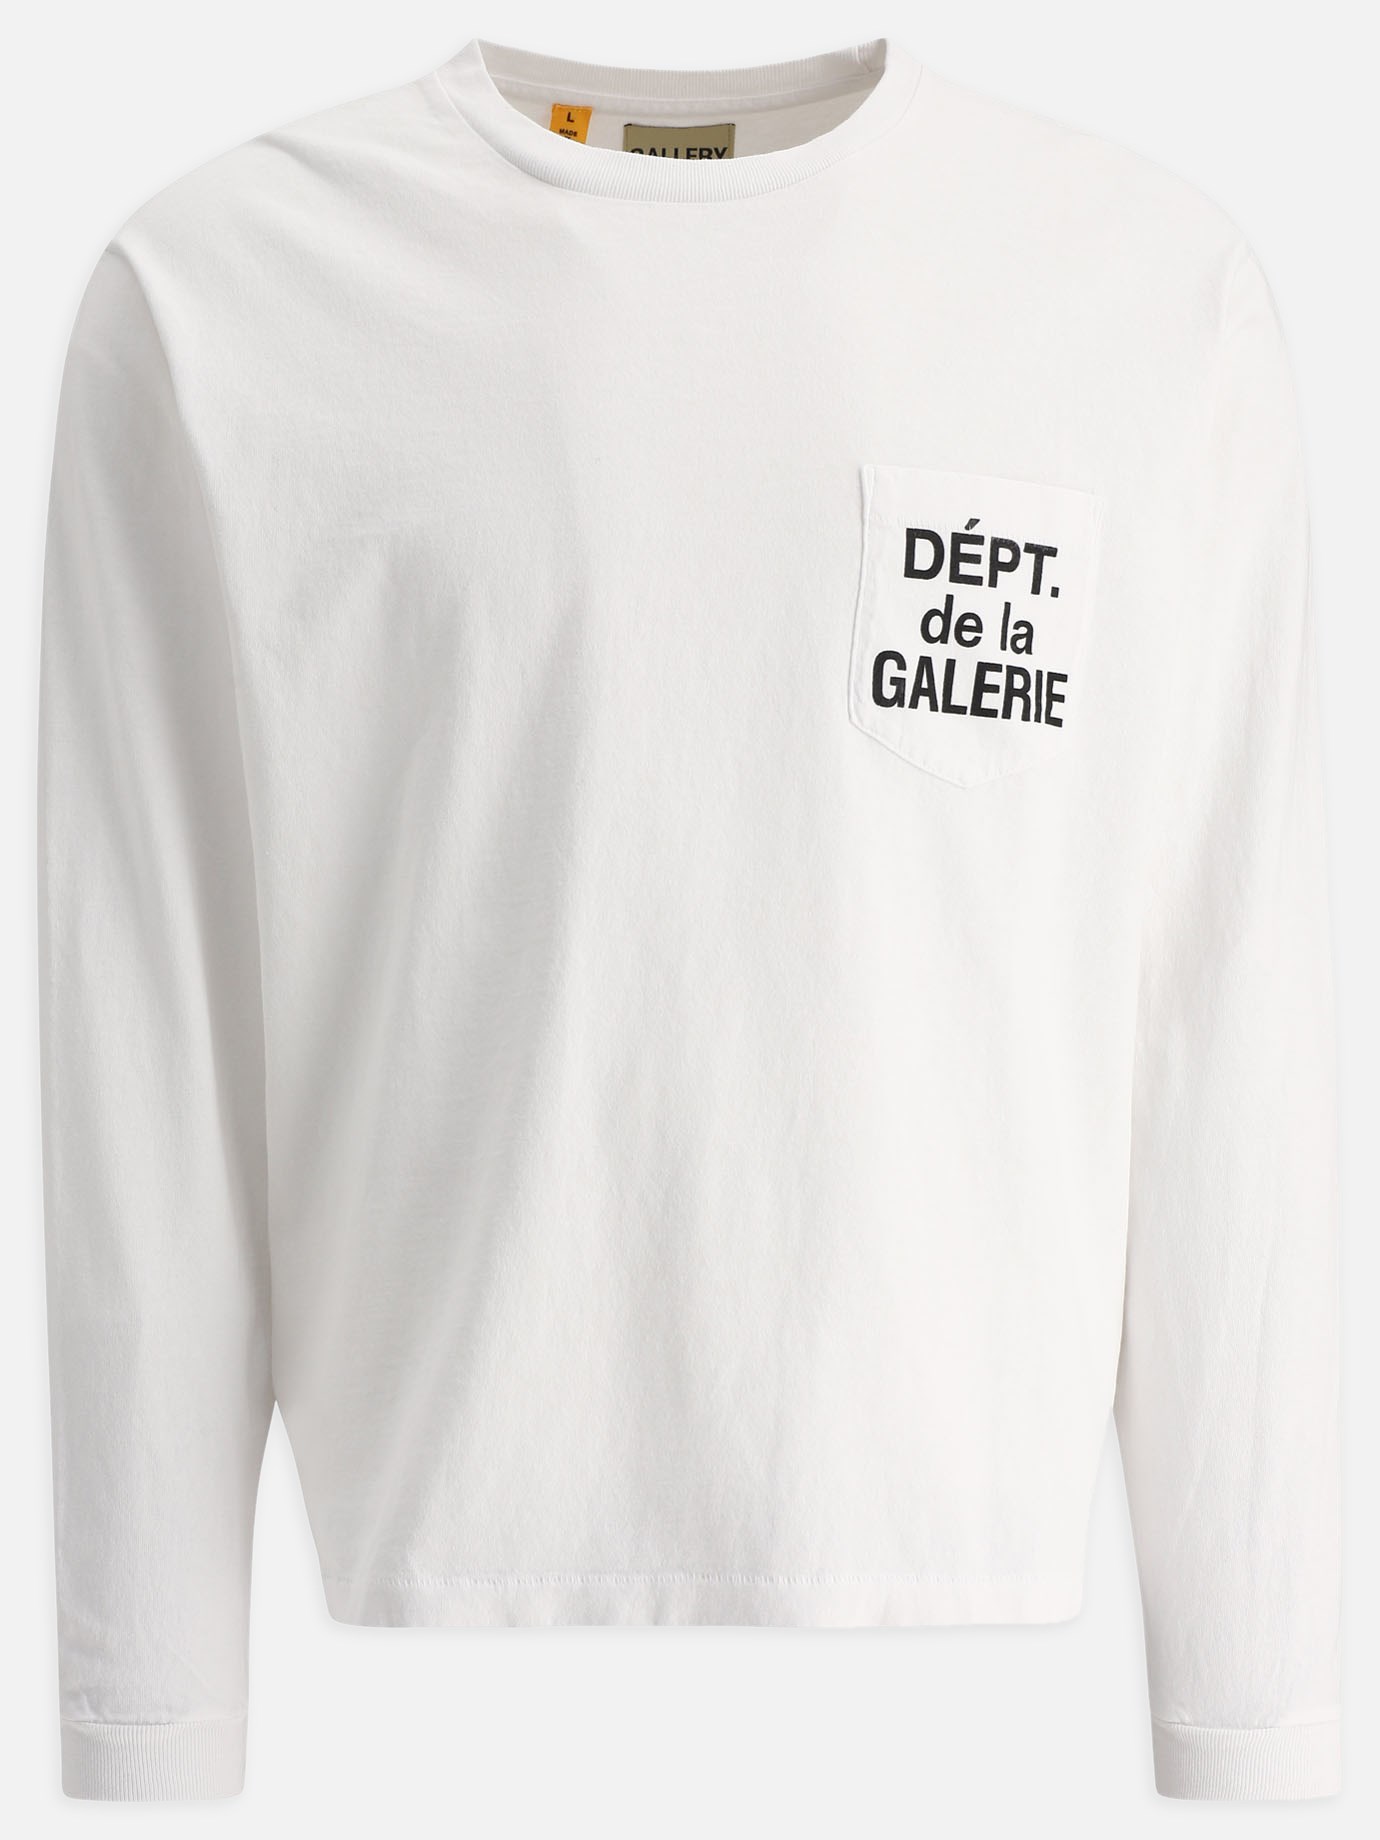 T-shirt  Dépt de la Galerie by Gallery Dept. - 5